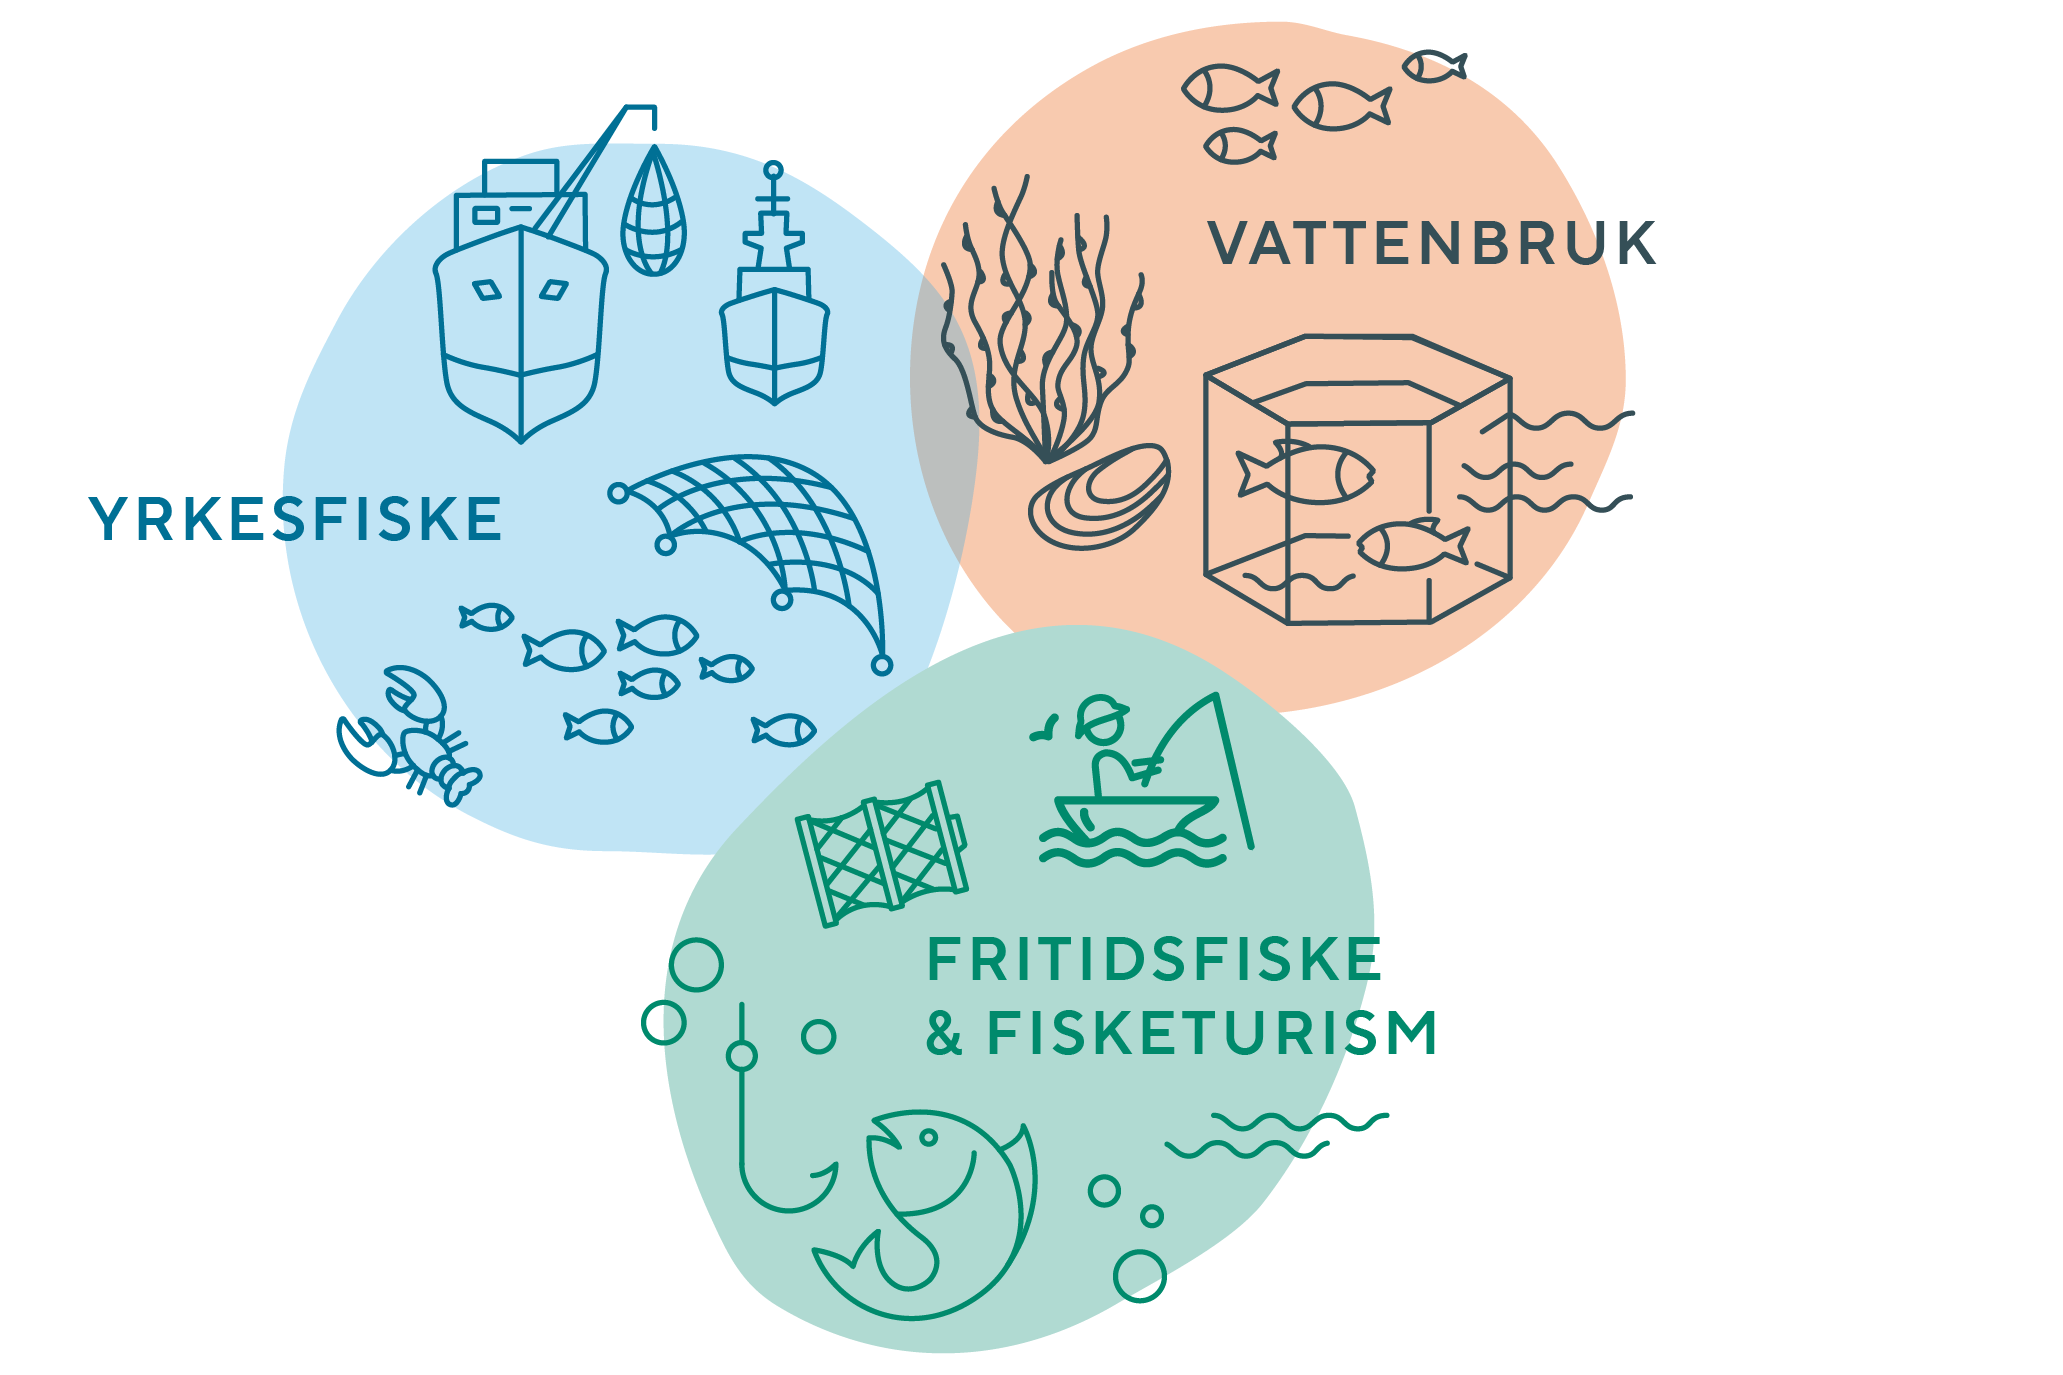 Framtidens fiske och vattenbruk illusatrion på båt, fisk, vattenbruk